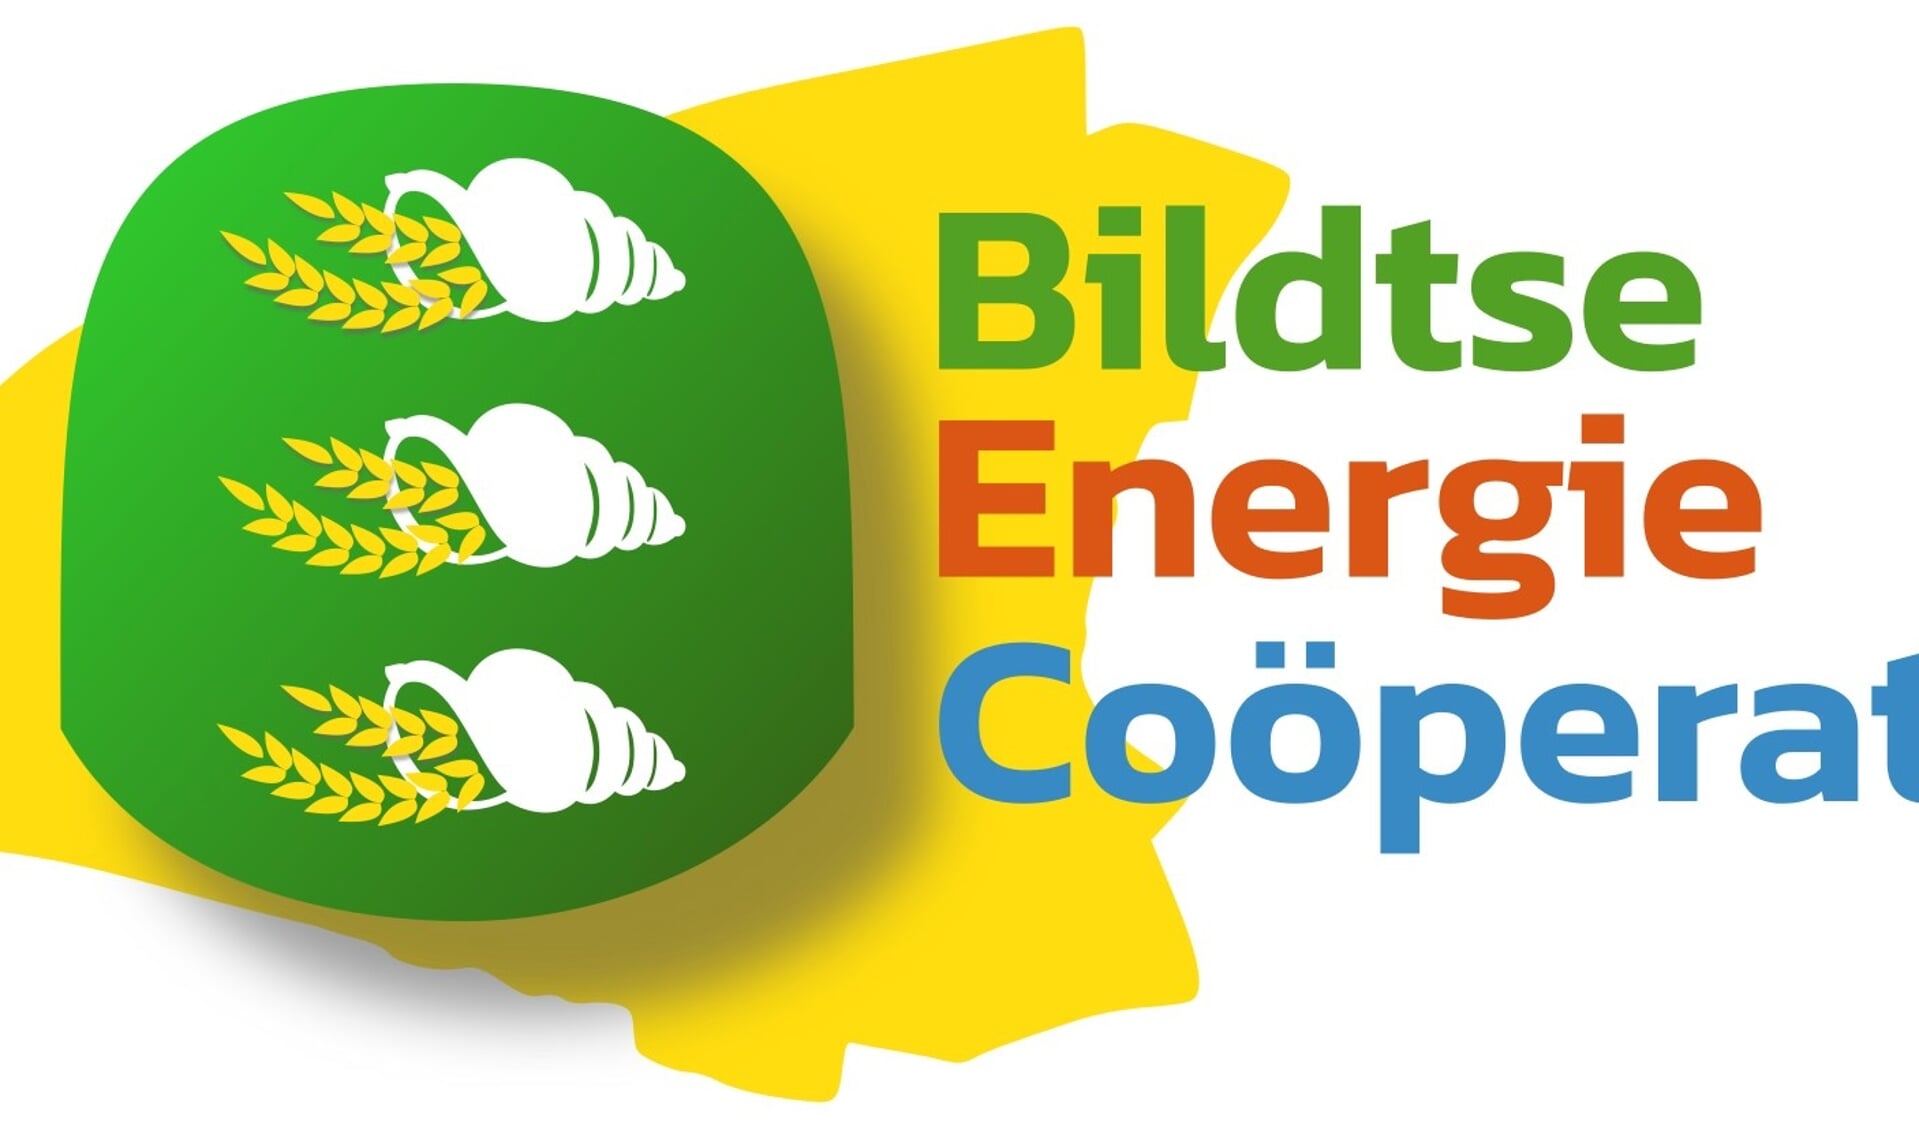 Bildtse Energie Cooperatie